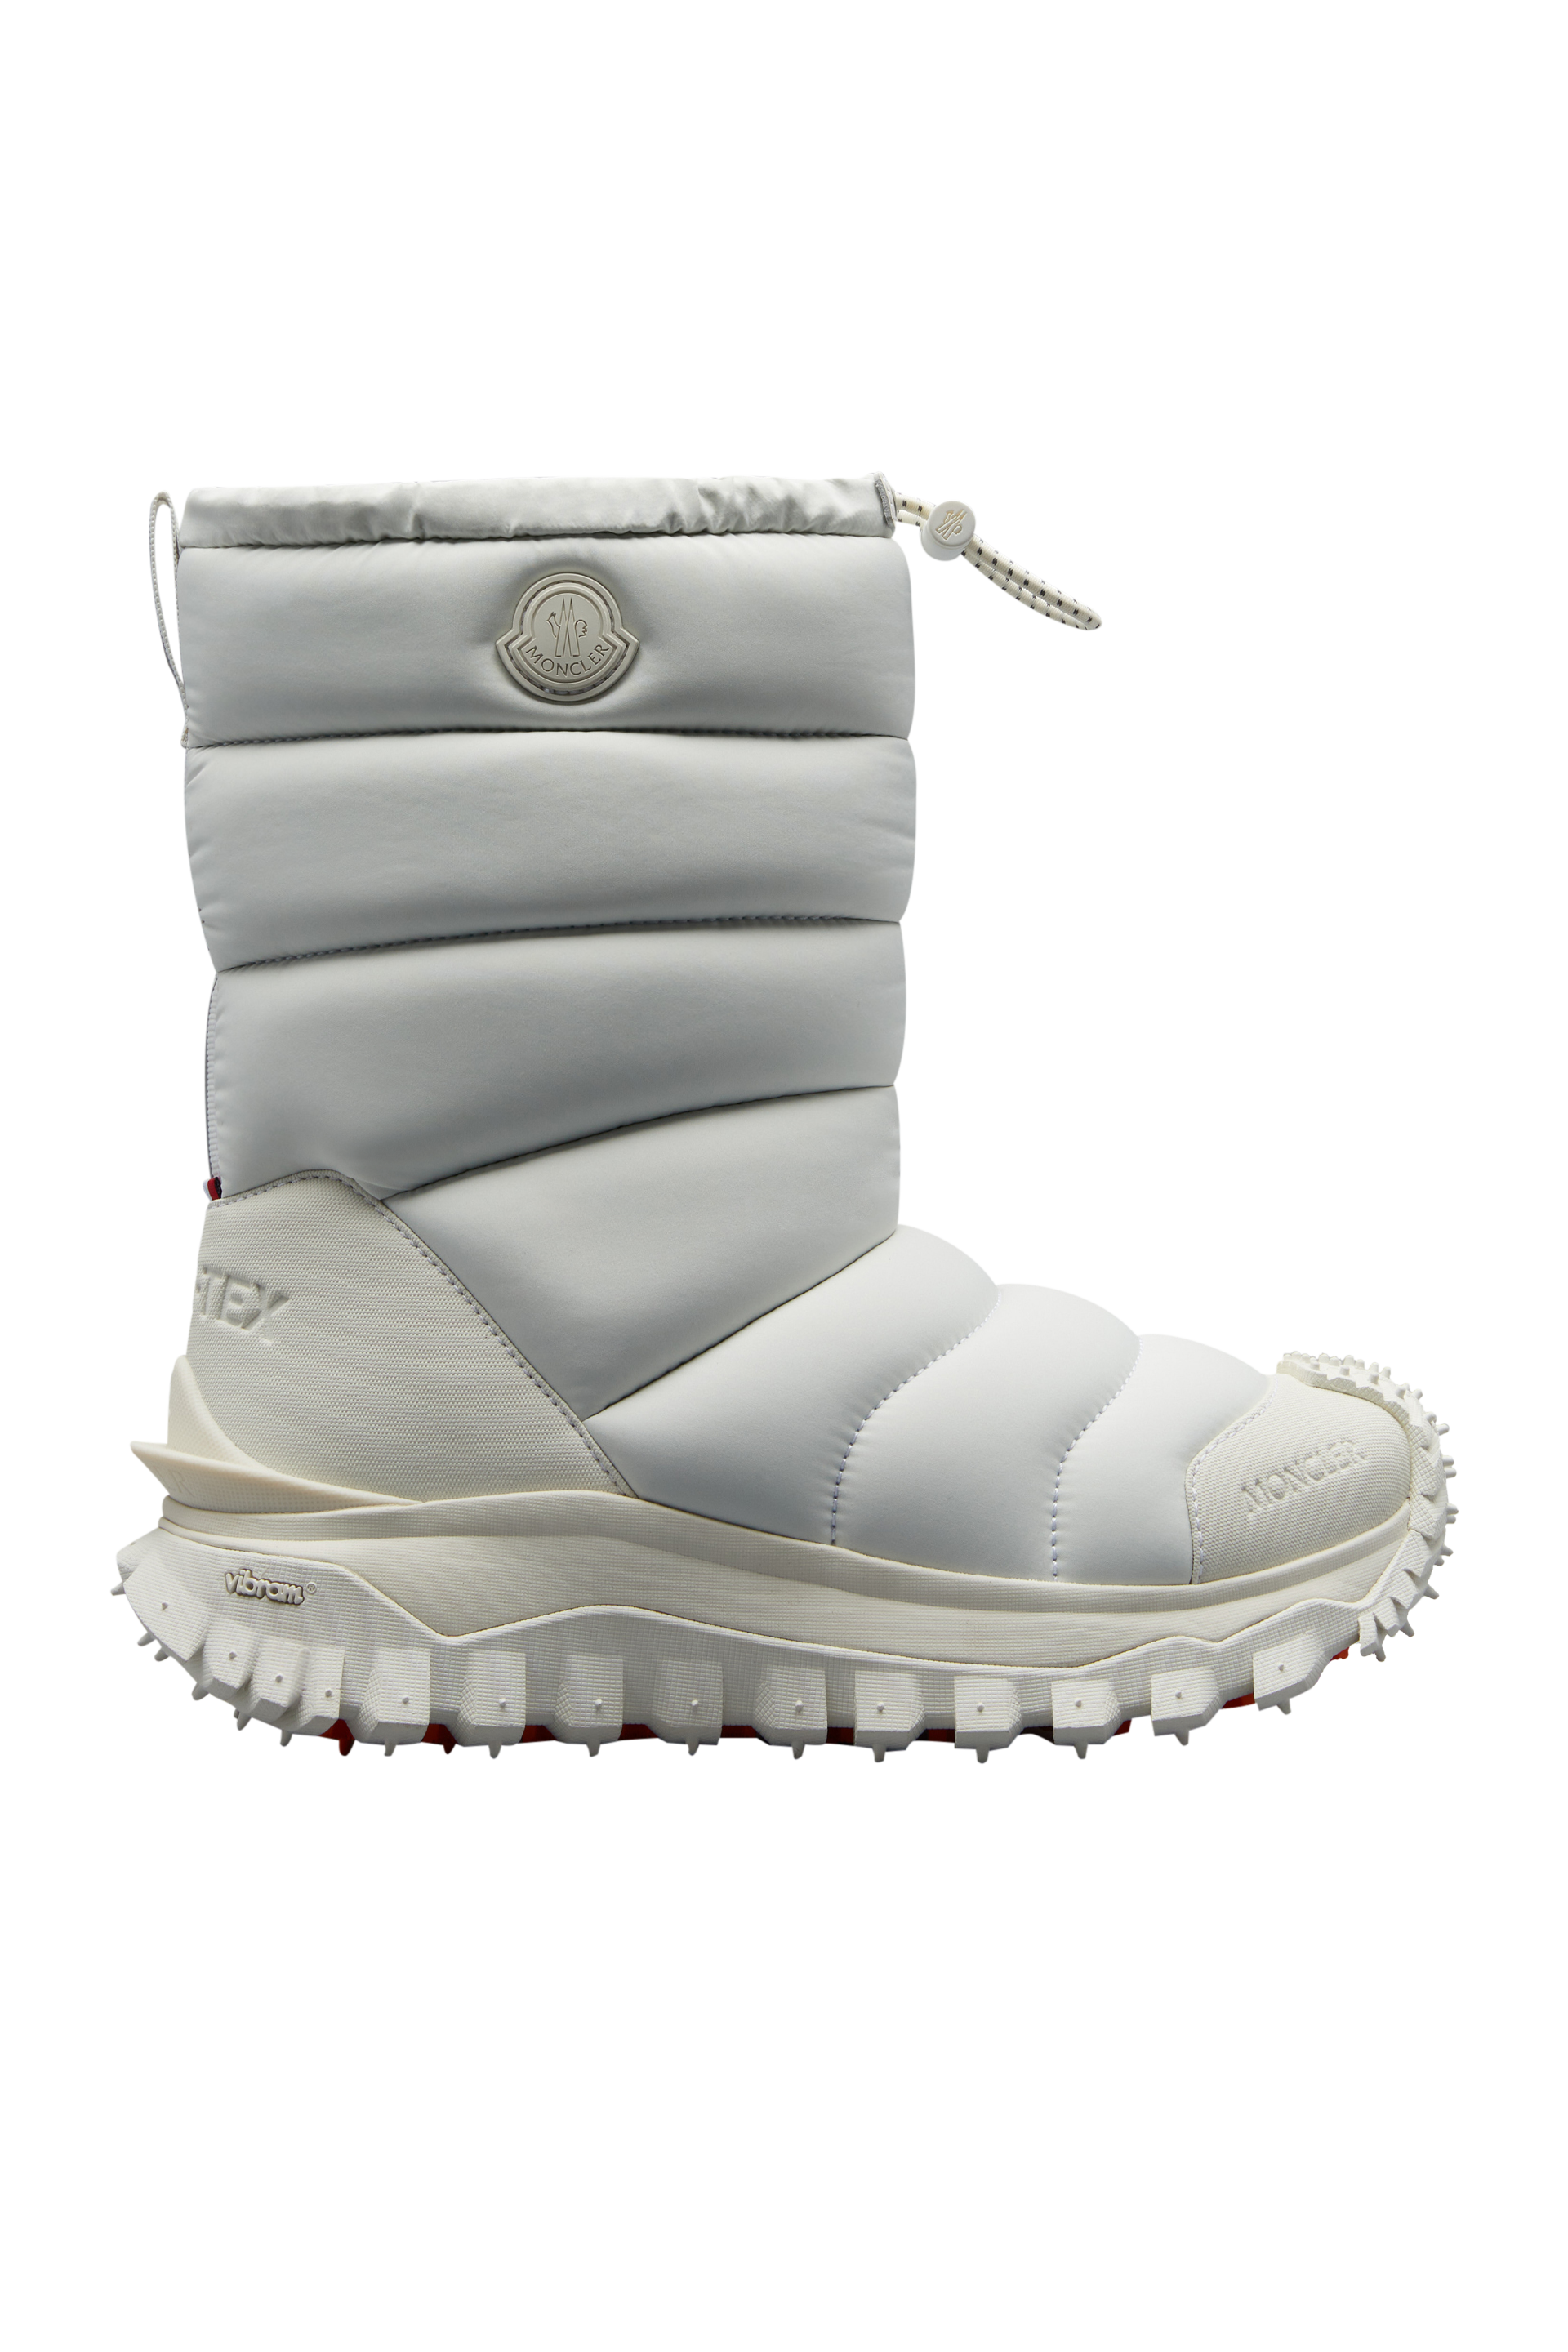 Moncler Collection Trailgrip Après Snow Boots, Women, White, Size: 41